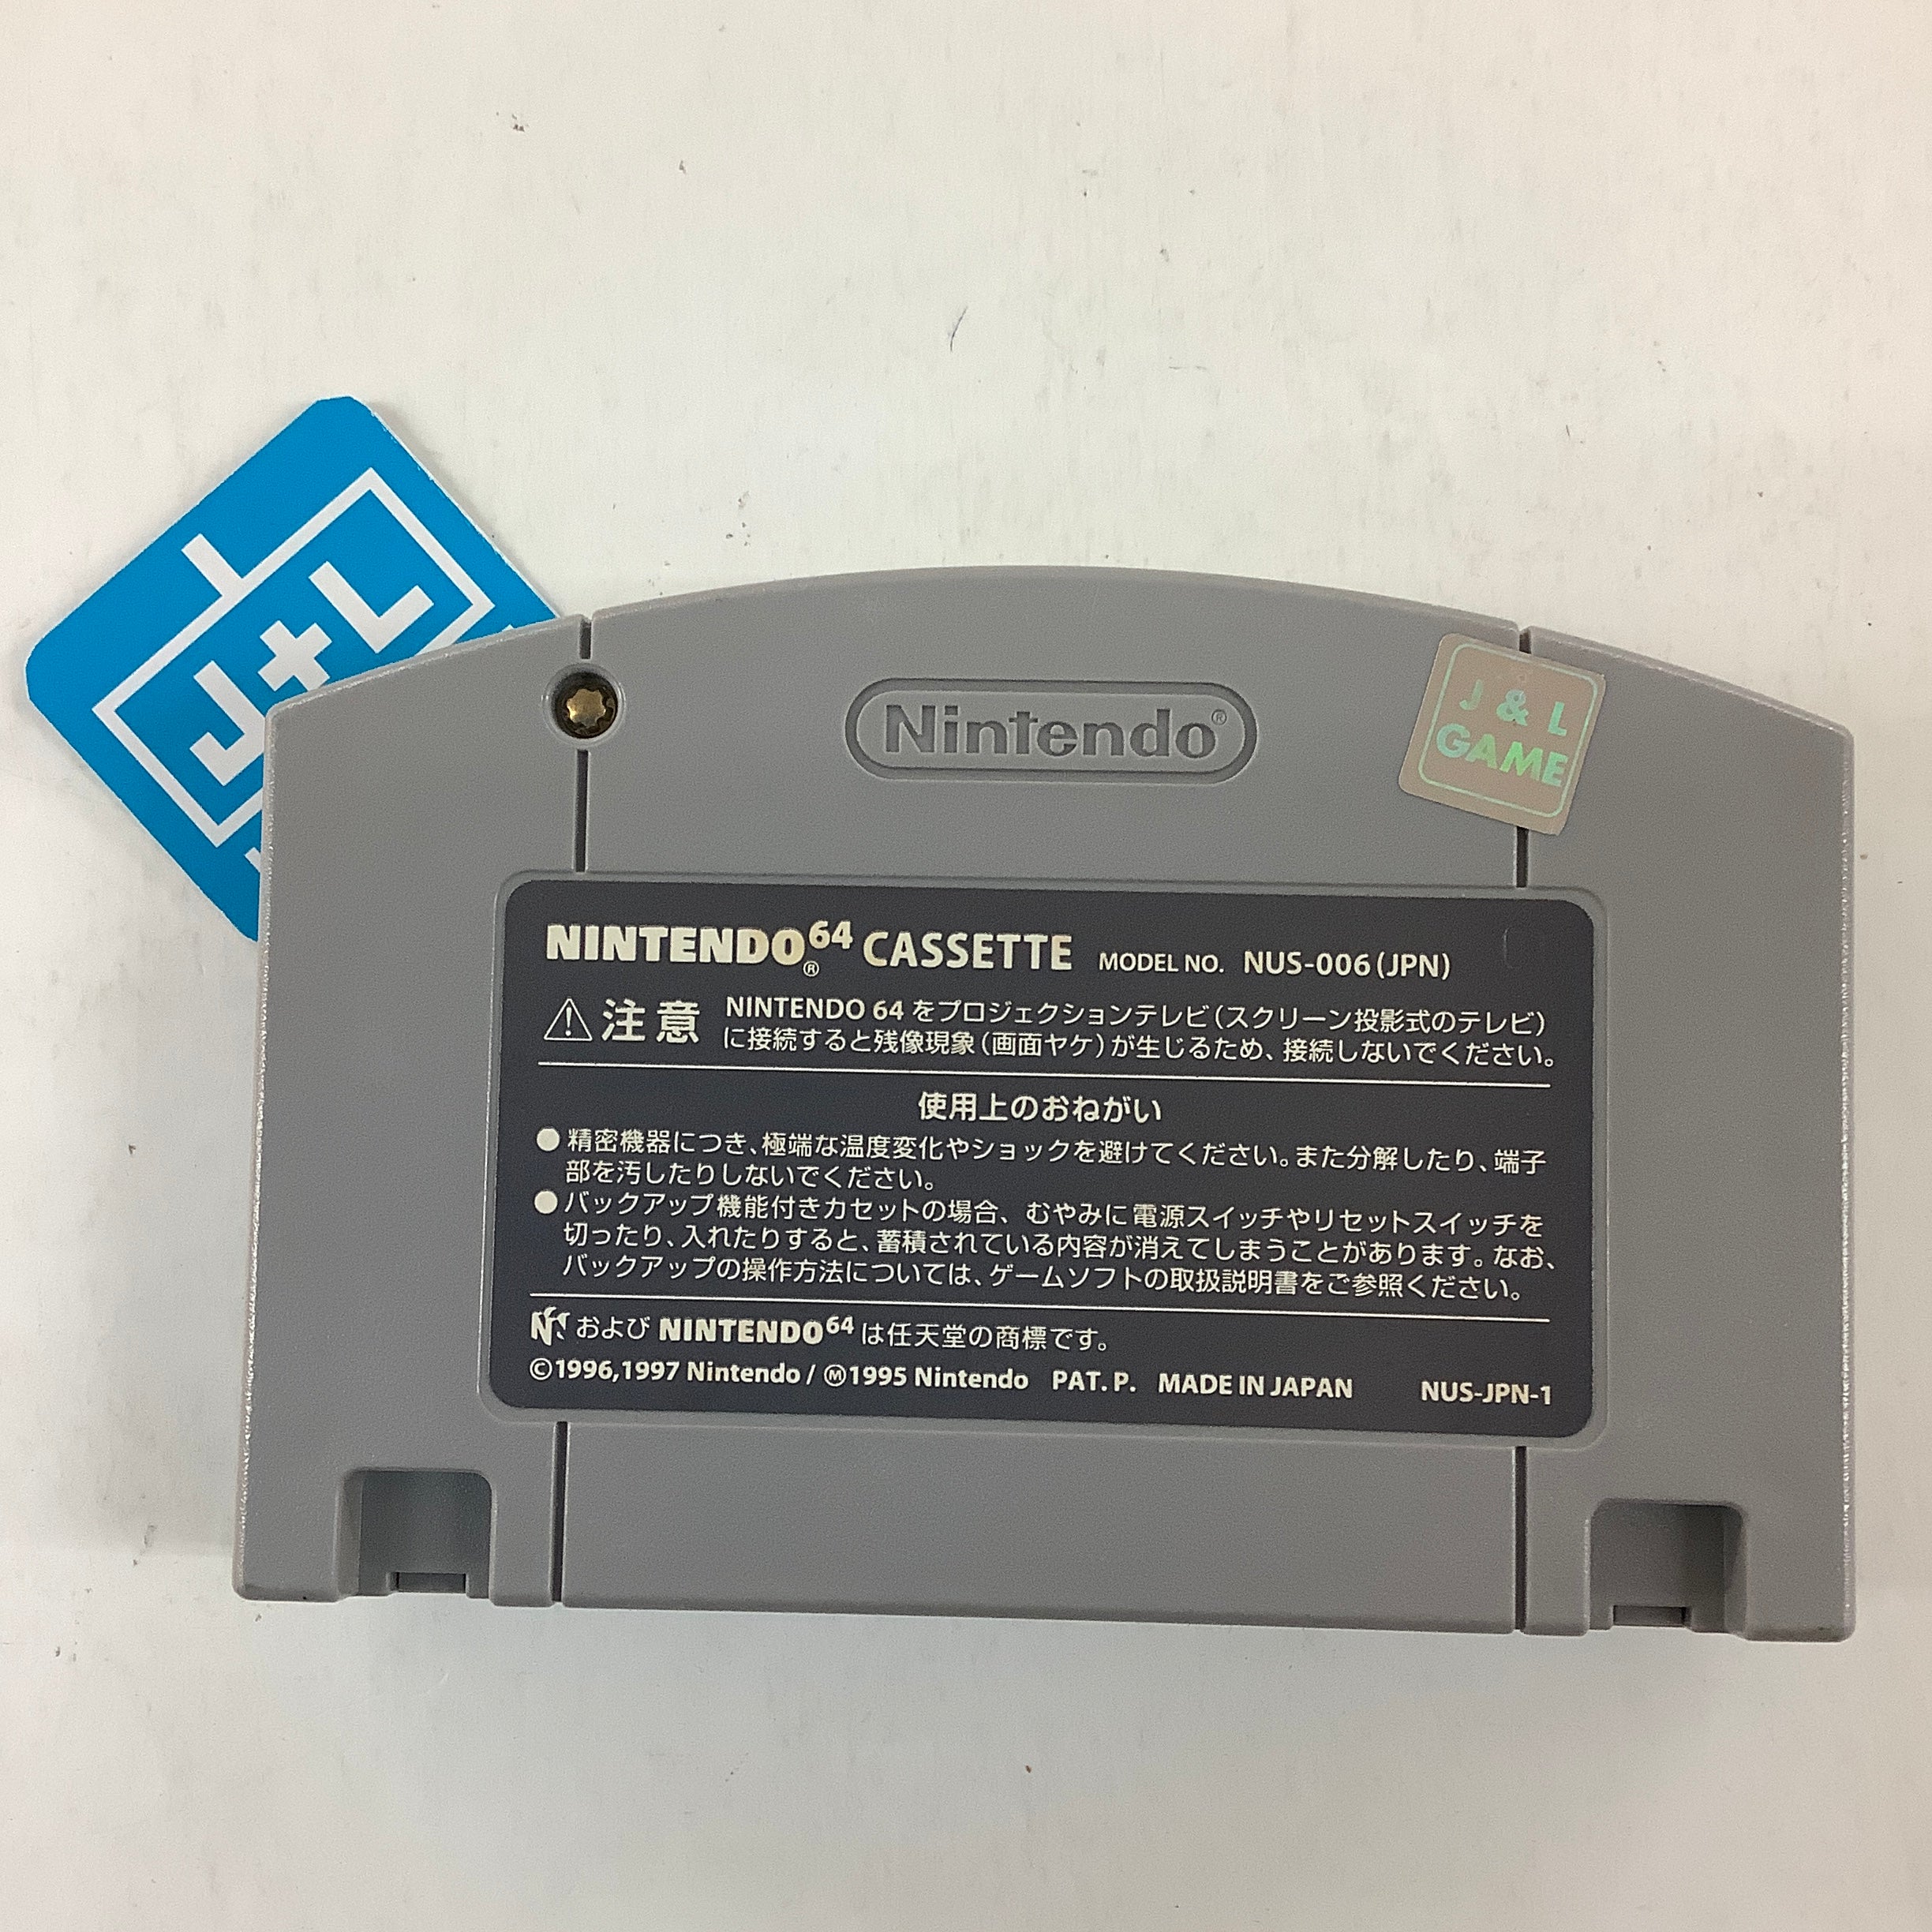 Banjo-Kazooie - (N64) Nintendo 64 [Pre-Owned] (Japanese Import) Video Games Nintendo   